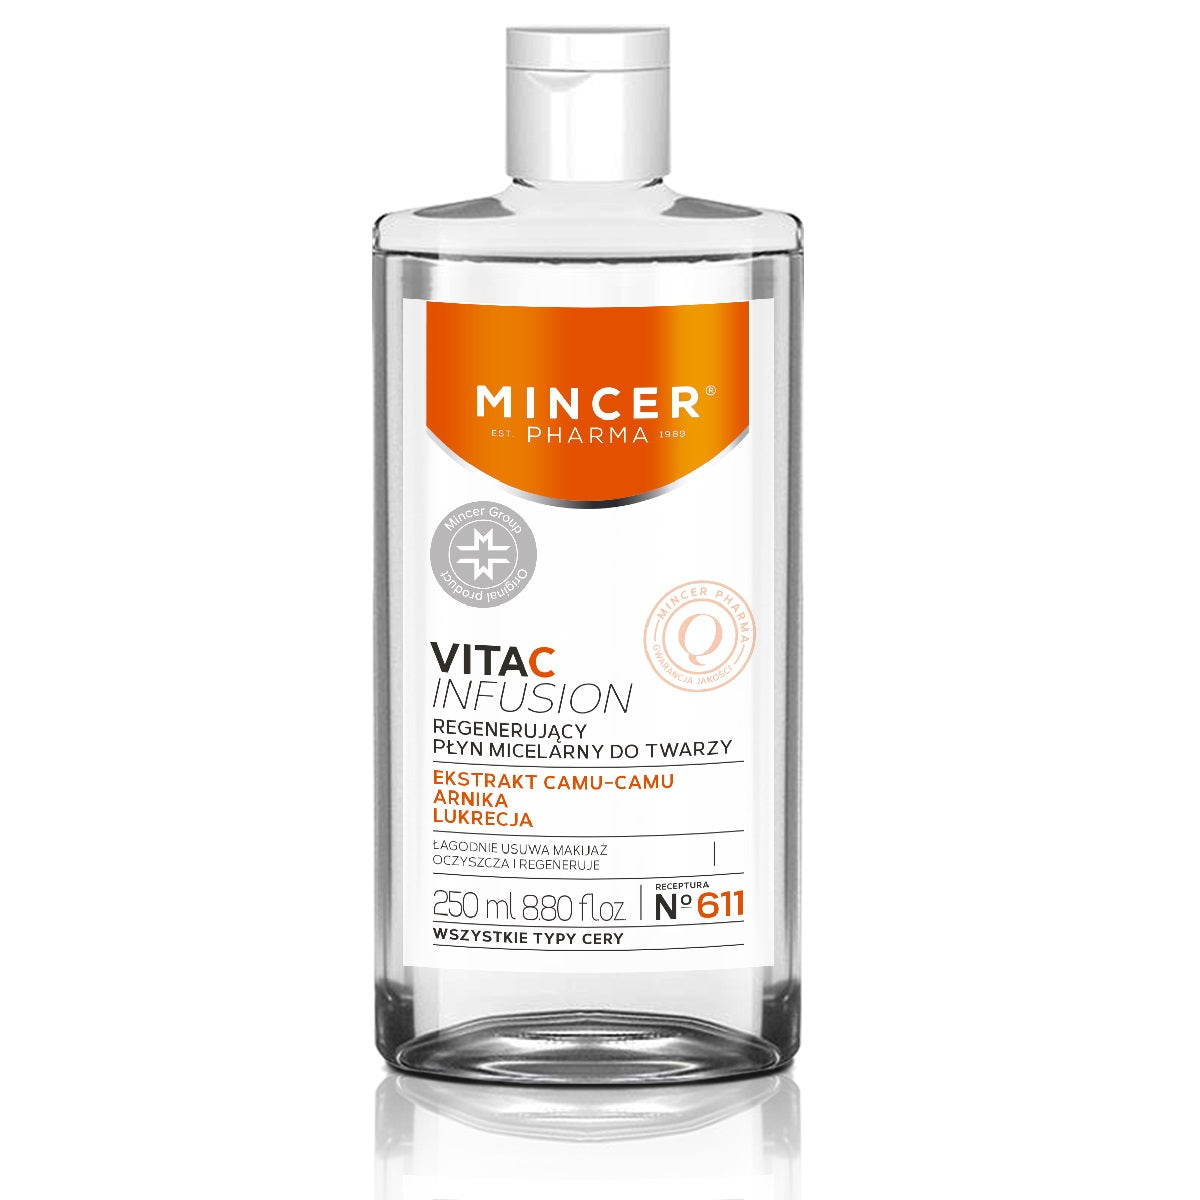 цена Mincer Pharma Регенерирующая мицеллярная вода для лица Vita C Infusion №611 250мл